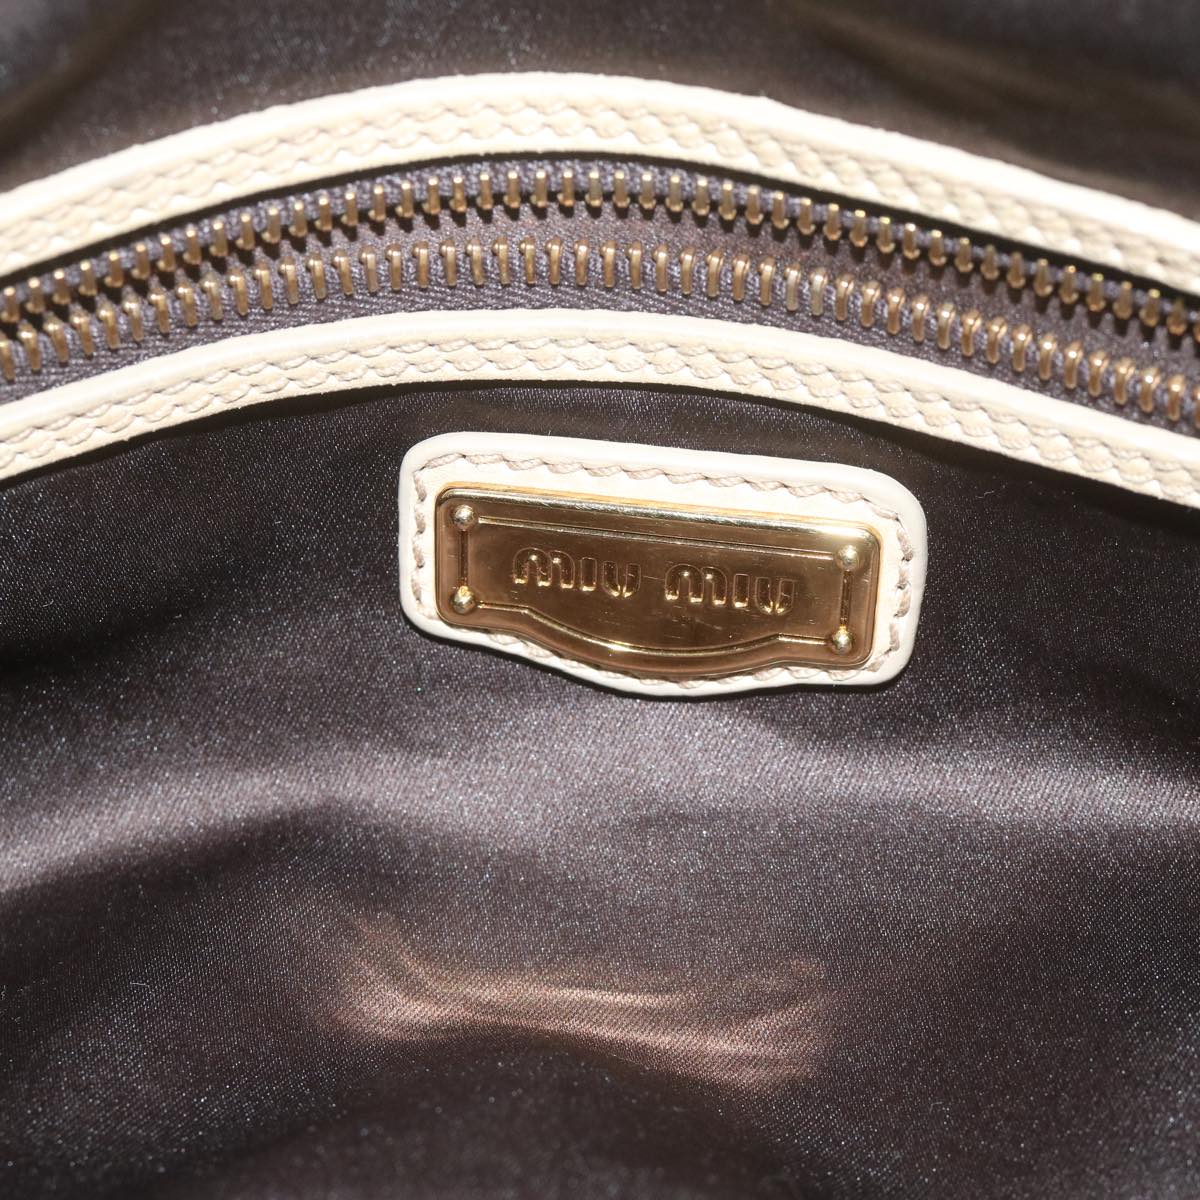 Miu Miu Hand Bag Leather Beige Auth 64367